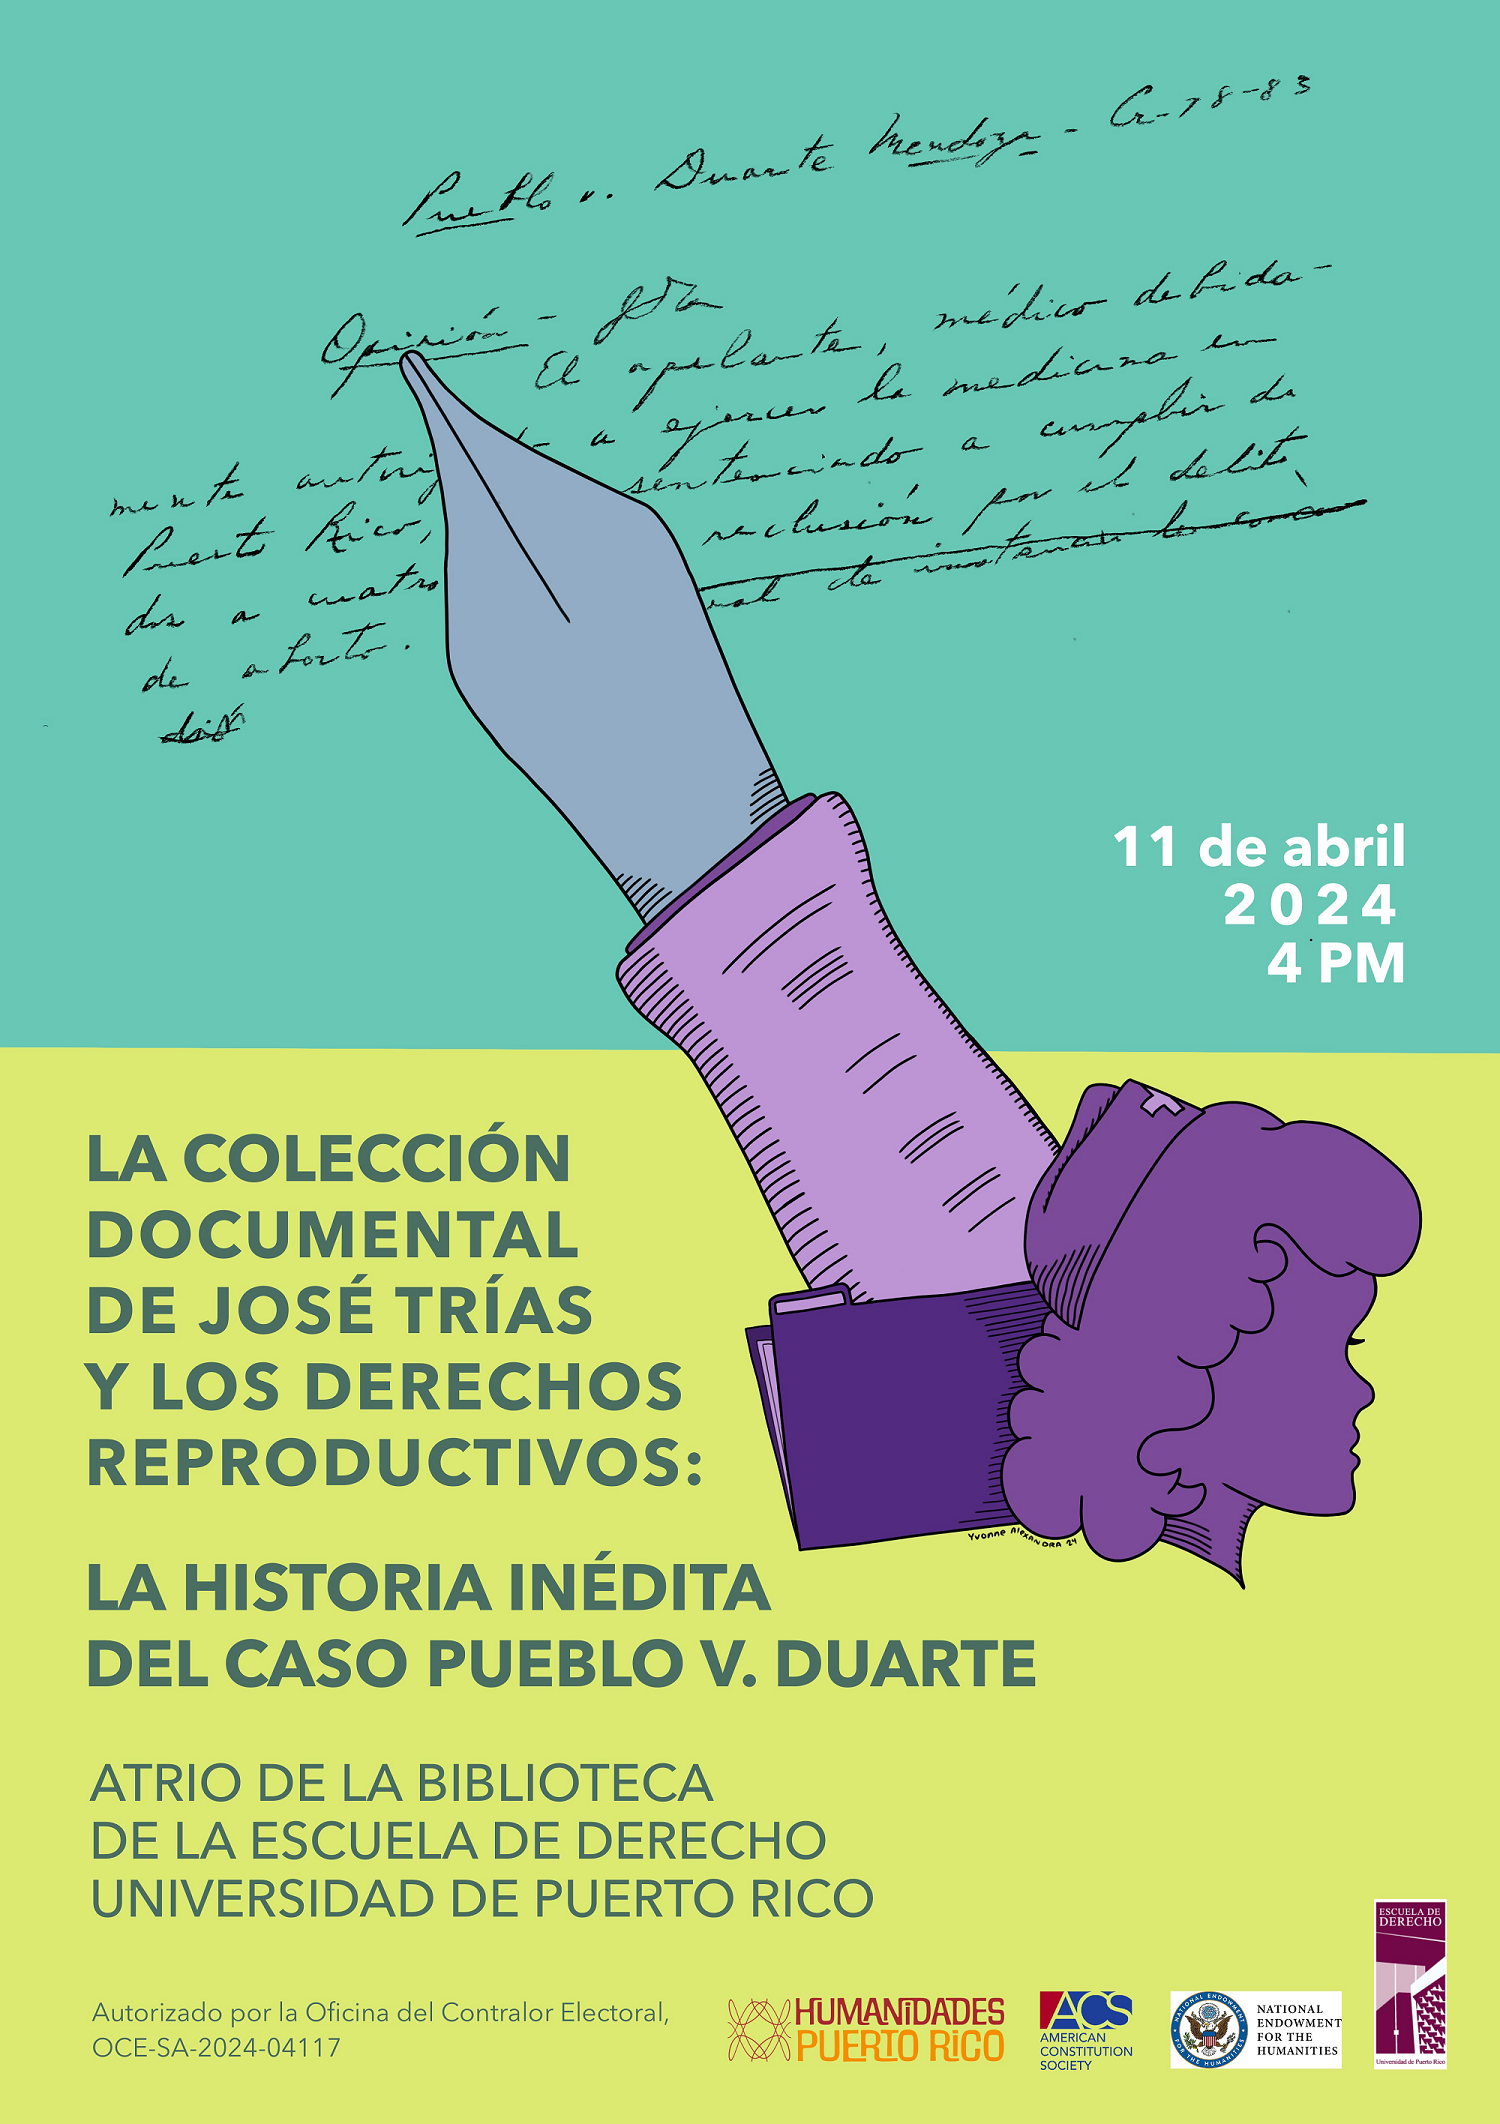 La Colección Documental de José Trías y los Derechos Reproductivos